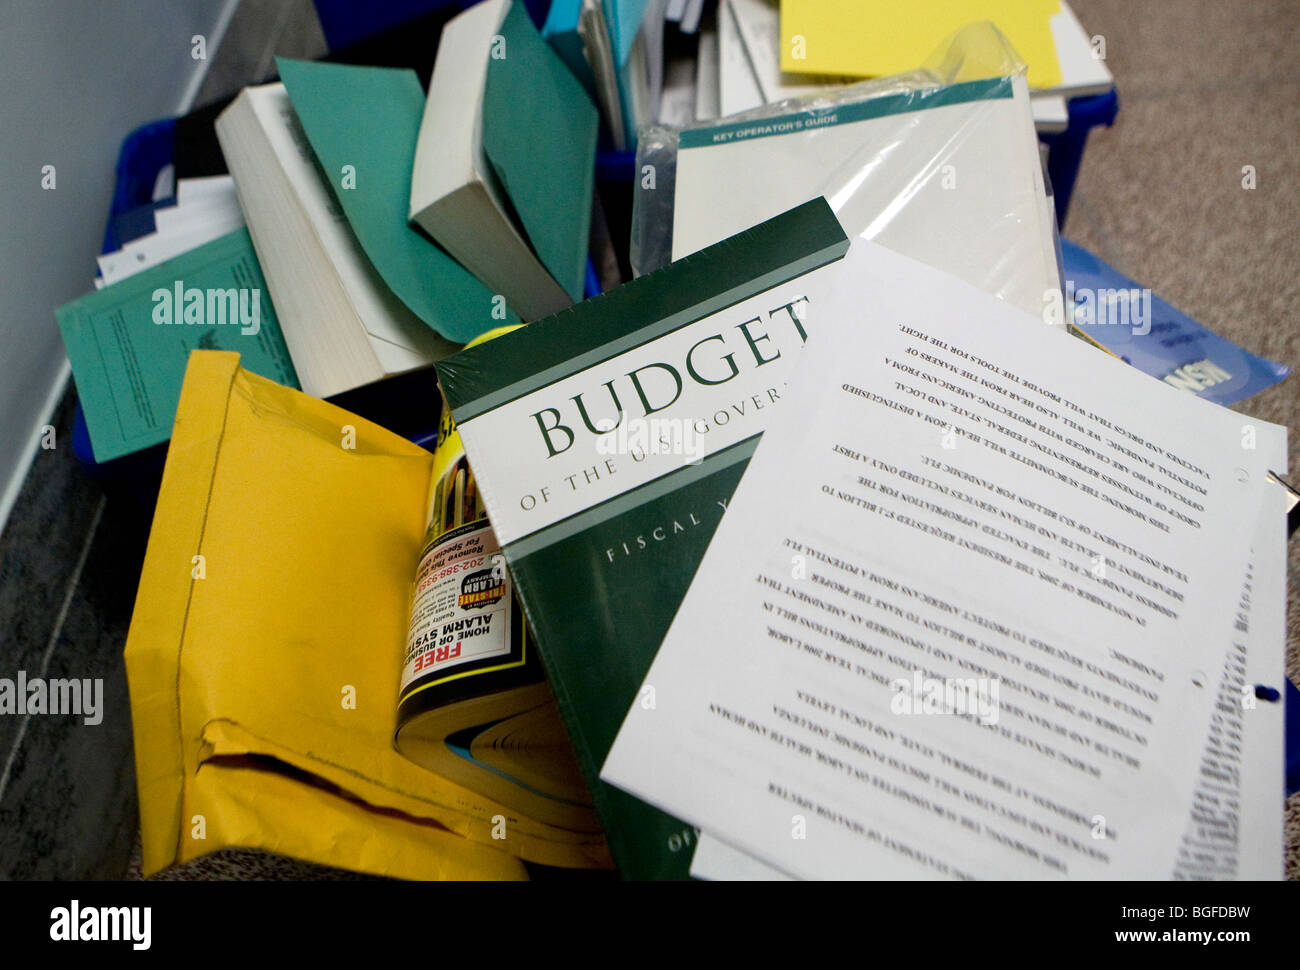 20 de mayo de 2009 – Washington, D.C. – UNA copia descartada del Presupuesto Federal que aún está en su envoltorio se encuentra en una papelera de reciclaje fuera de una oficina en el edificio de la Oficina del Senado de Dirksen. Foto de stock